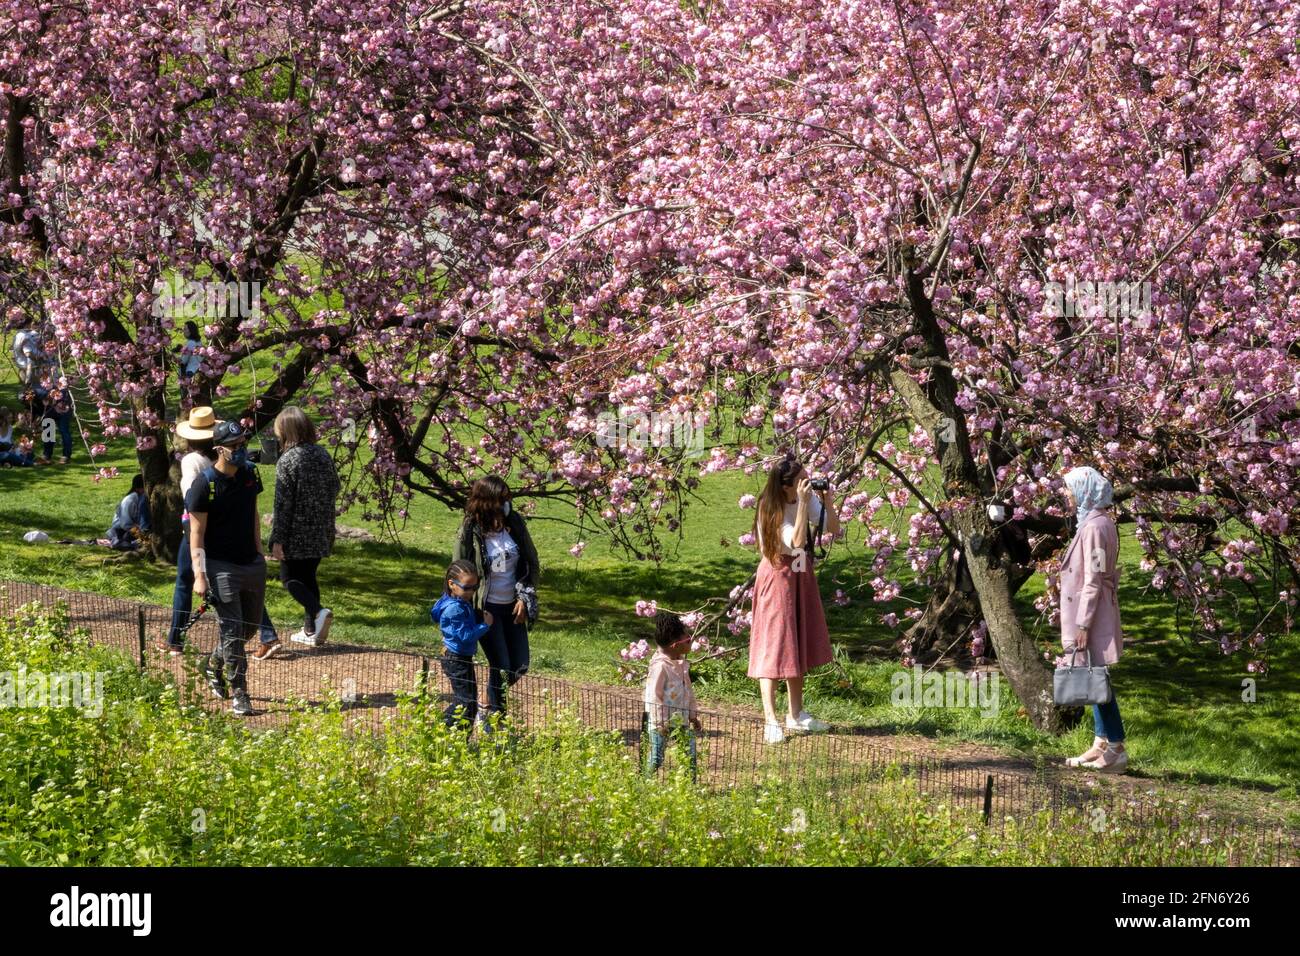 Kwanzan Cherry Trees verleihen dem Cental Park im Frühling, NYC, USA, eine wundervolle Farbe in leuchtendem Pink Stockfoto